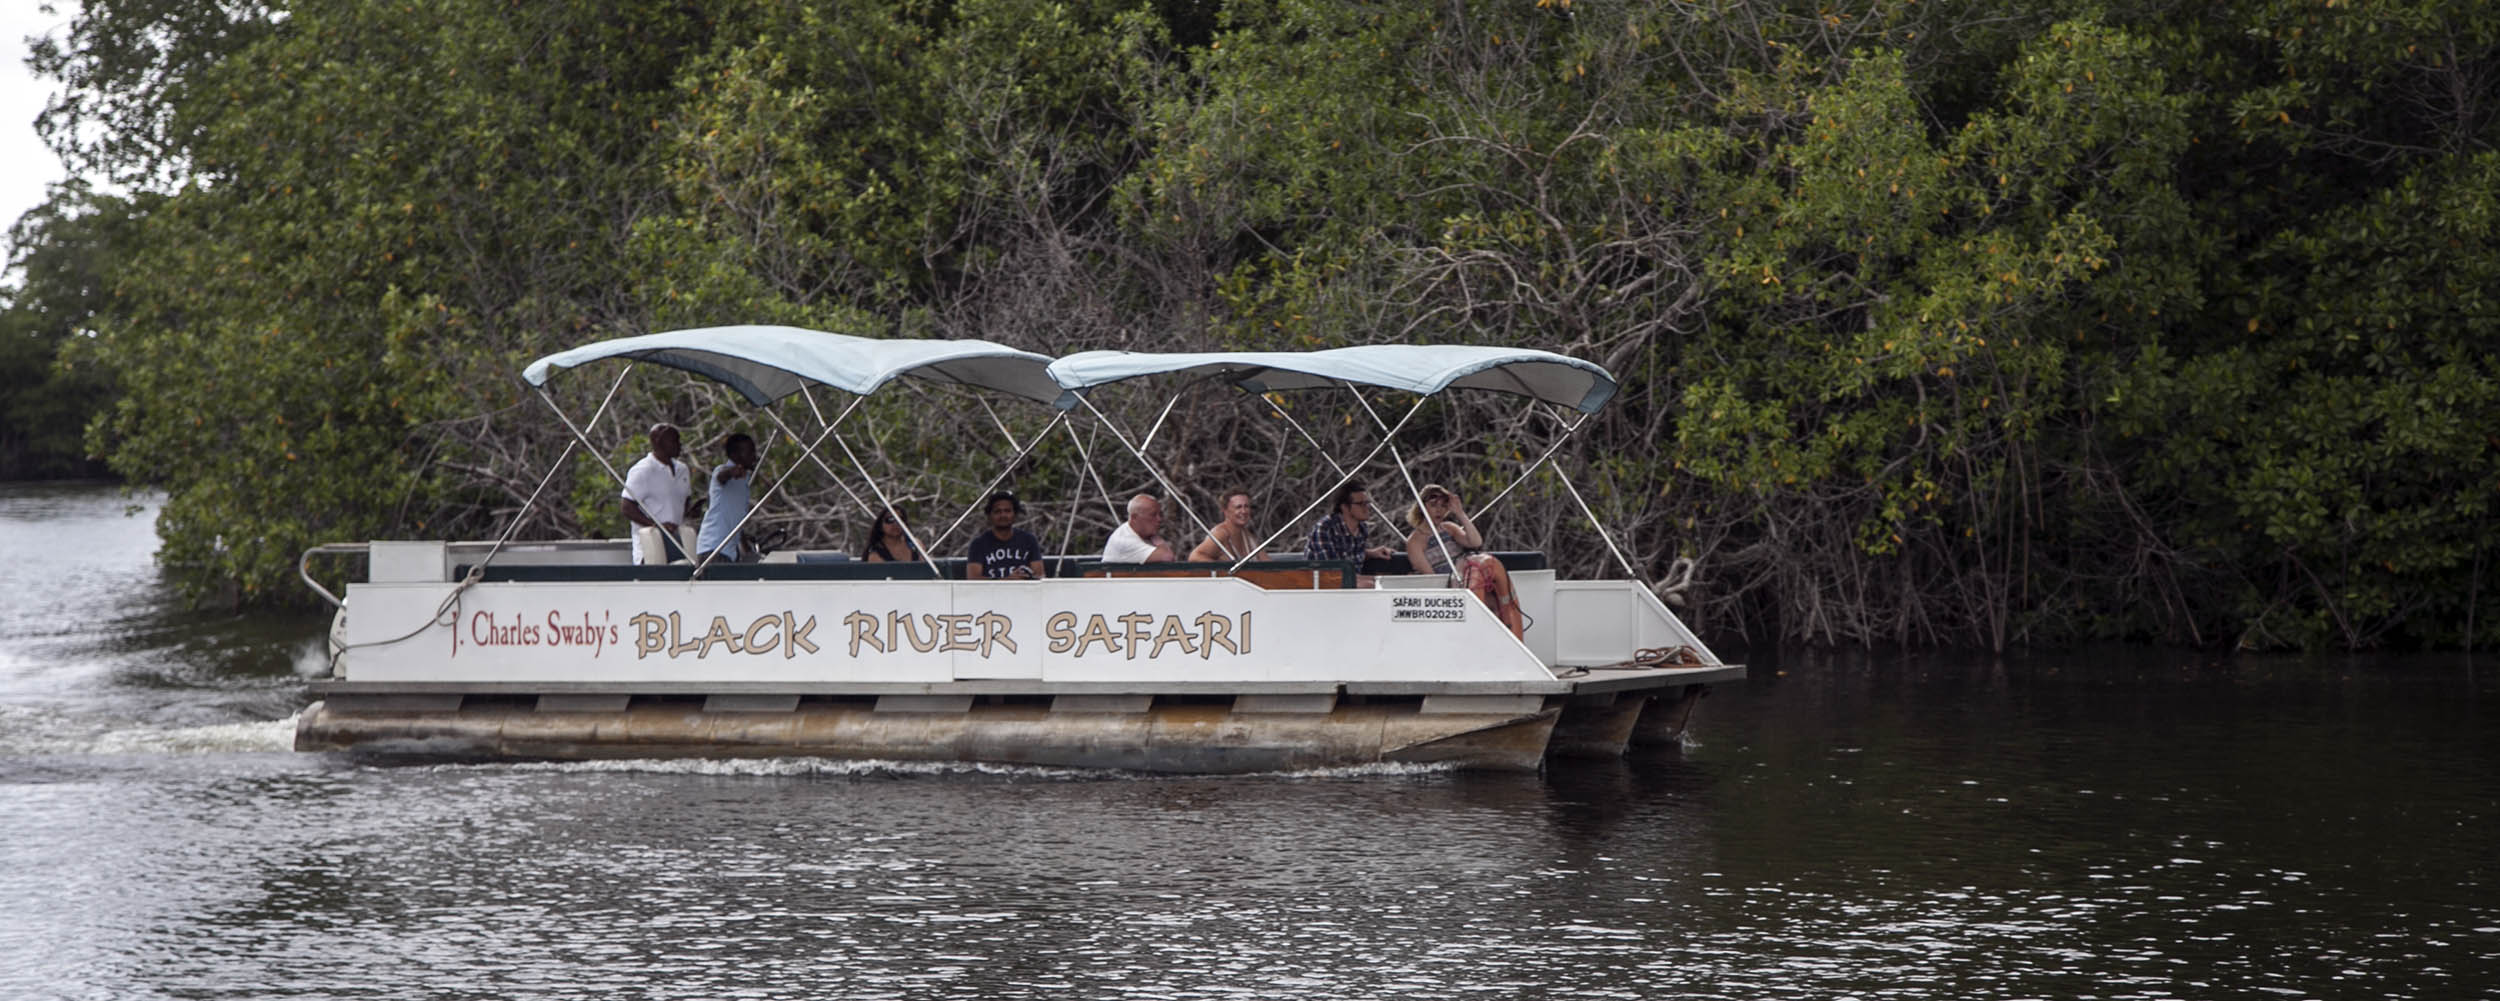 Black River Safari - Jamaica